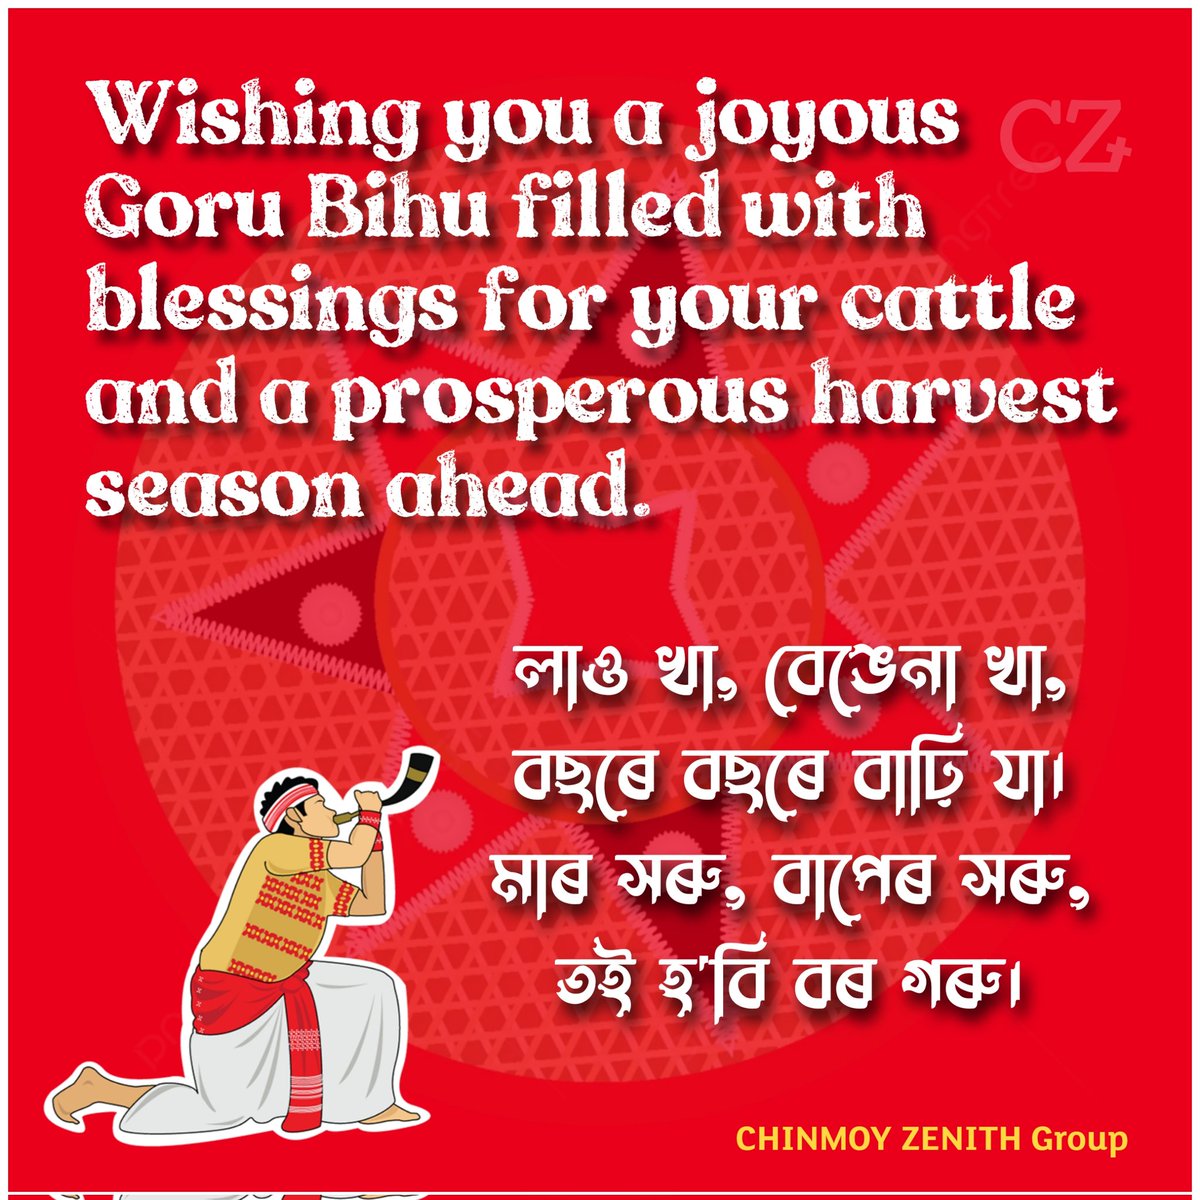 I hope this Rongali Bihu will bring cheer, prosperity and peace in your life. 

#Assam #RongaliBihu #Bihu #NortheastIndia #Guwahati